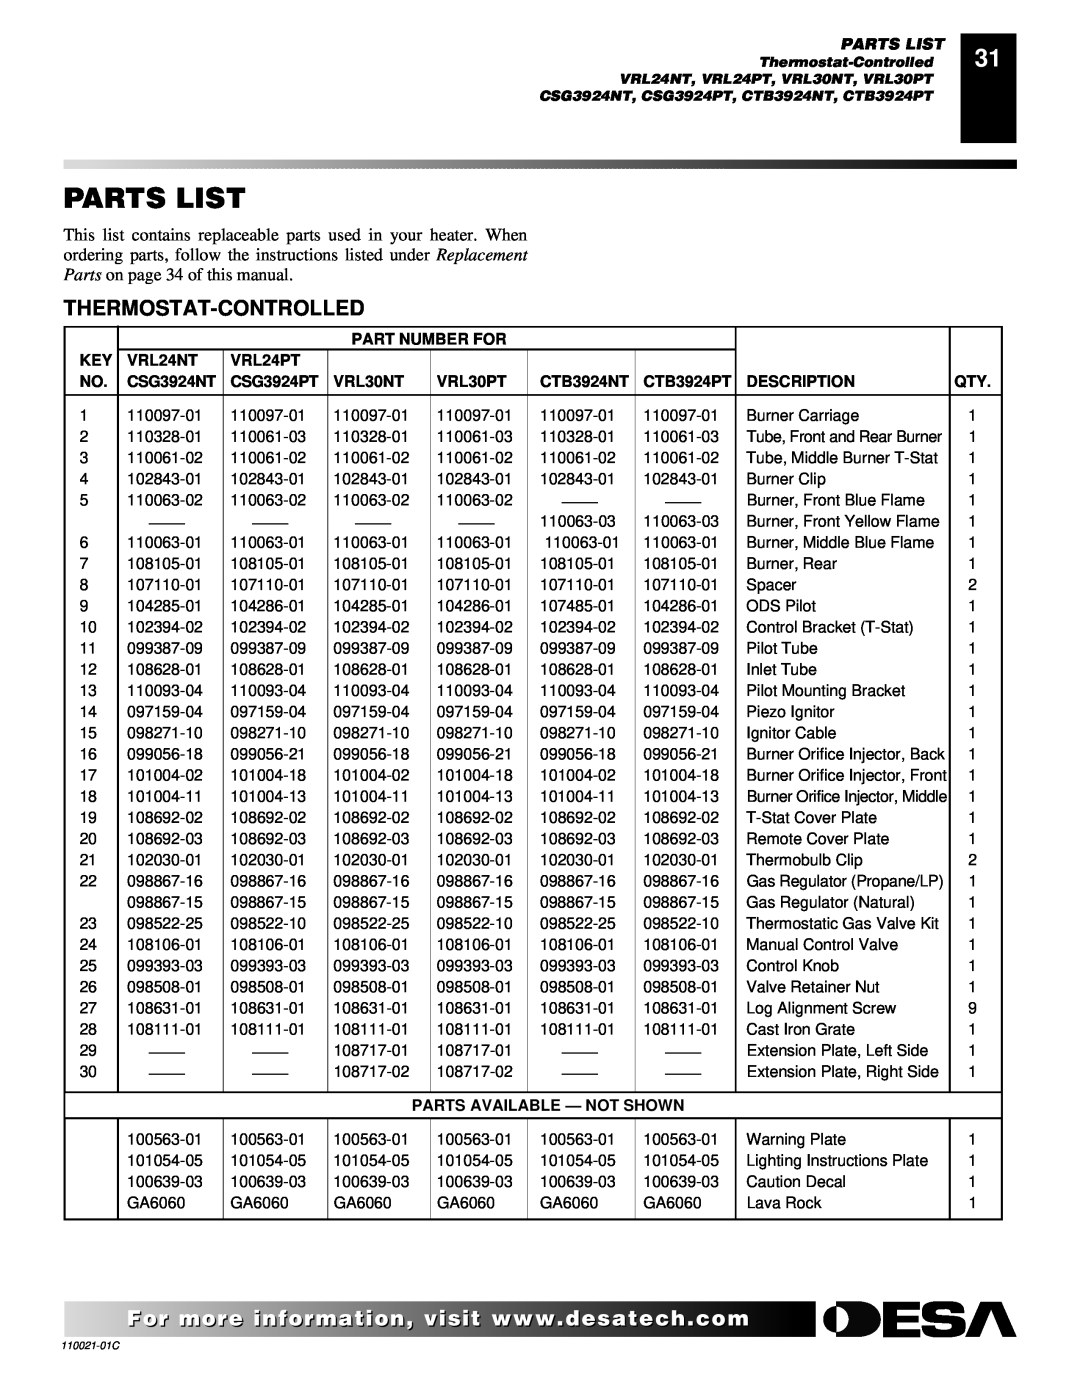 Desa VRL24PR Parts List, Part Number For, VRL24NT, VRL24PT, CSG3924NT, CSG3924PT, VRL30NT, VRL30PT, CTB3924NT, CTB3924PT 